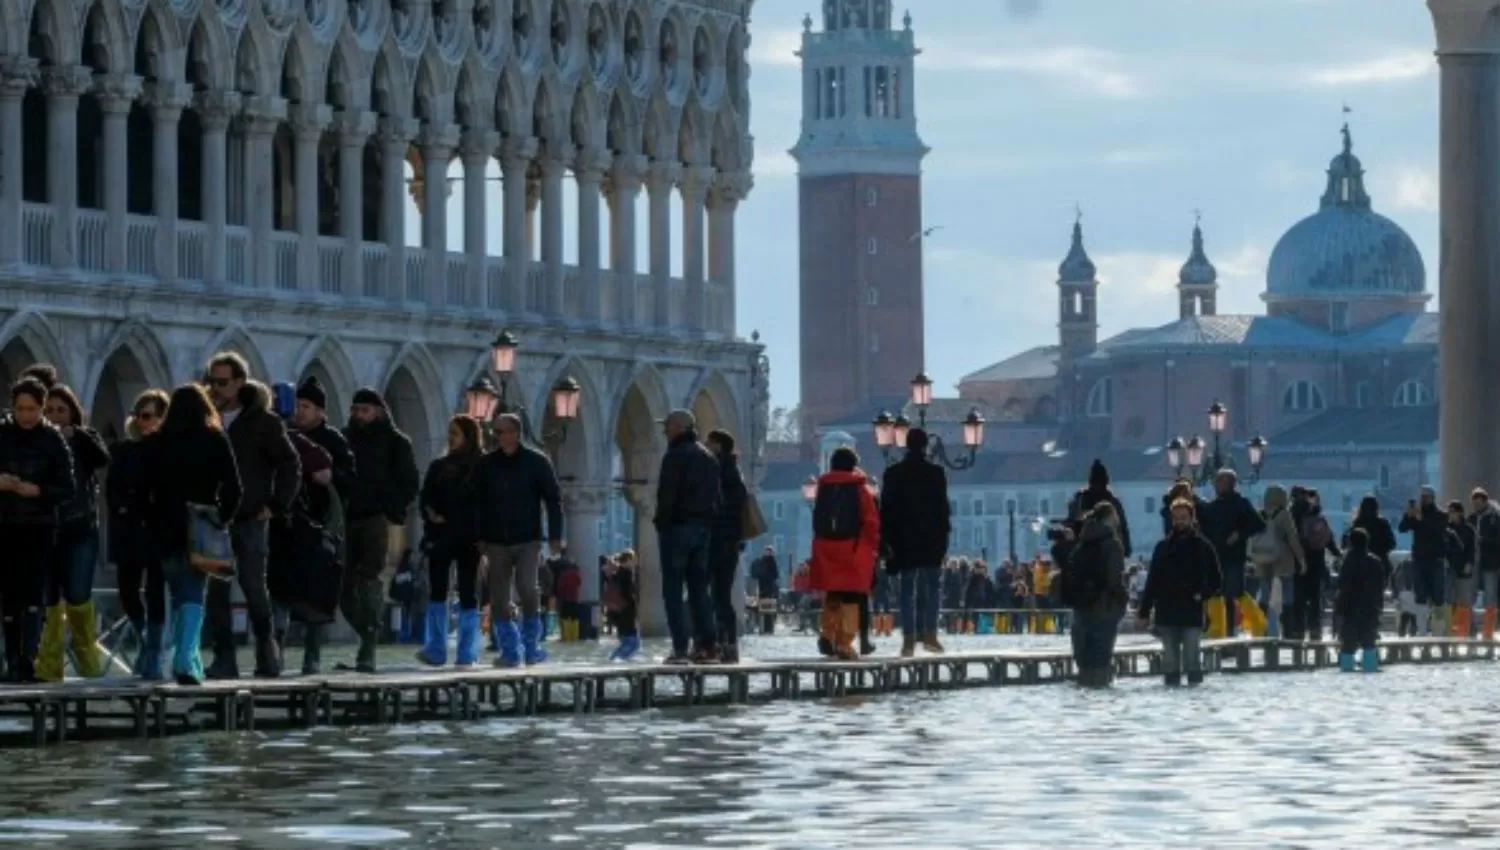 La gente camina por una pasarela improvisada sobre la Plaza de San Marcos inundada, Venecia, Italia. REUTERS / Manuel Silvestri